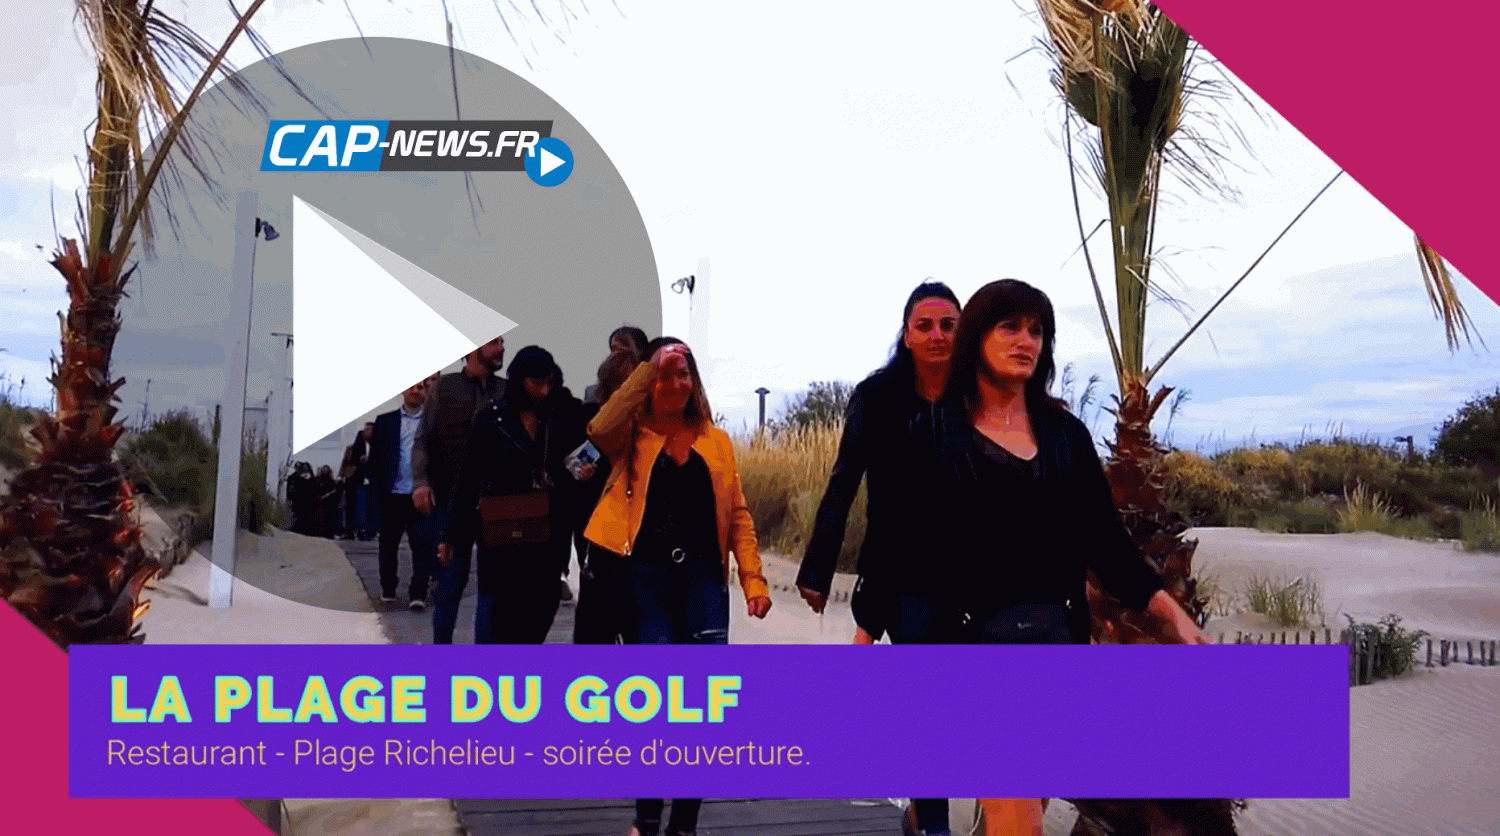 Cap d'Agde - CAP D'AGDE ( 34 ) VIDEO CAP NEWS - LA SAISON ESTIVALE 2019 DE LA PLAGE DU GOLF EST LANCÉE !